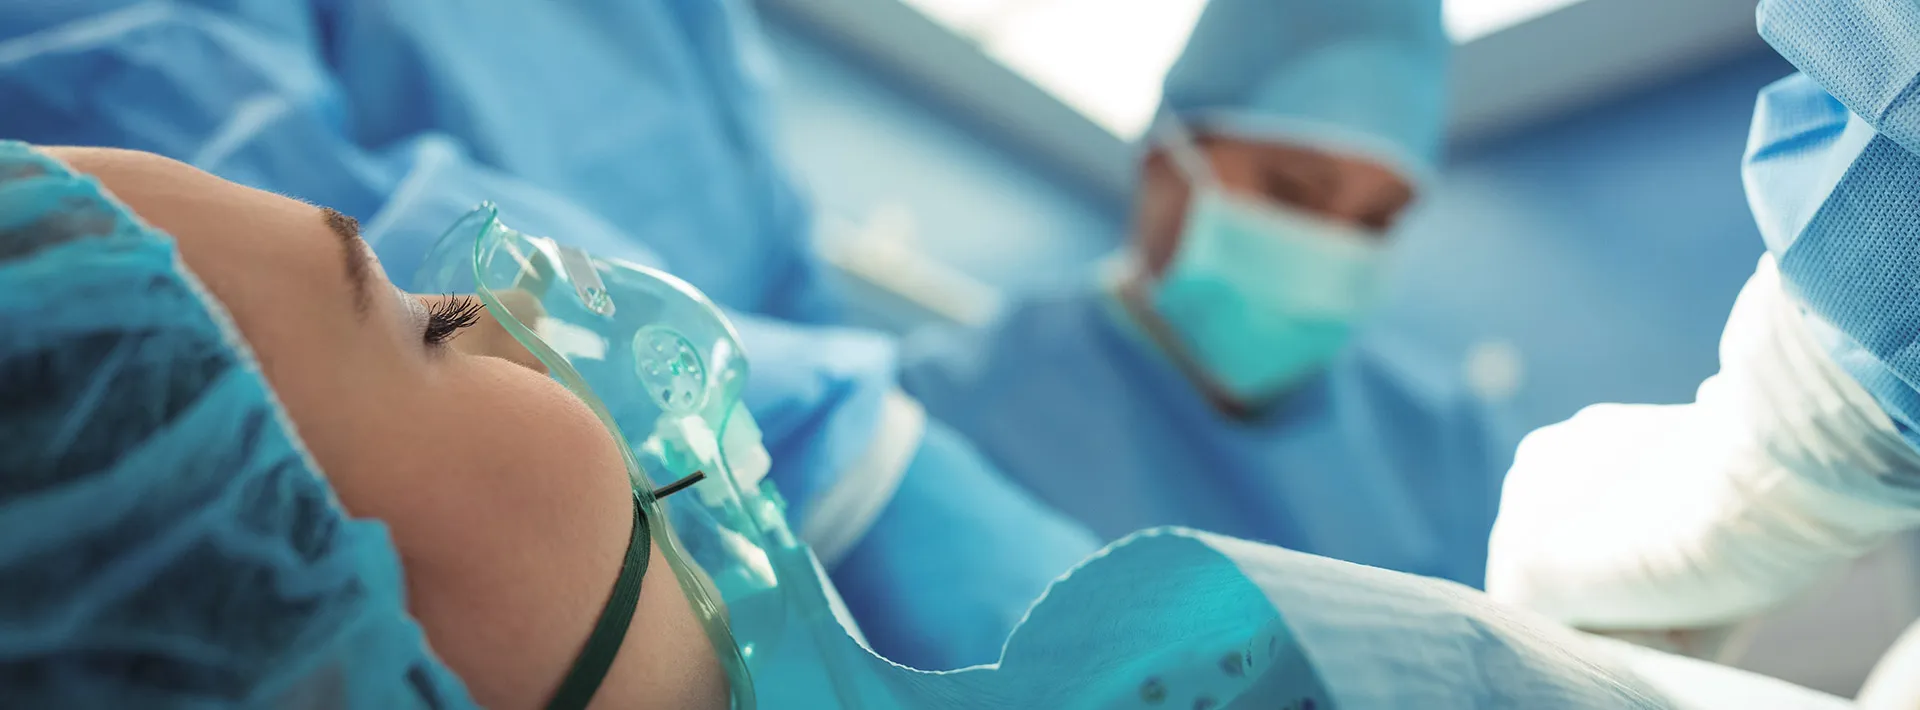 Chirurgie gynécologiques Sousse Tunisie